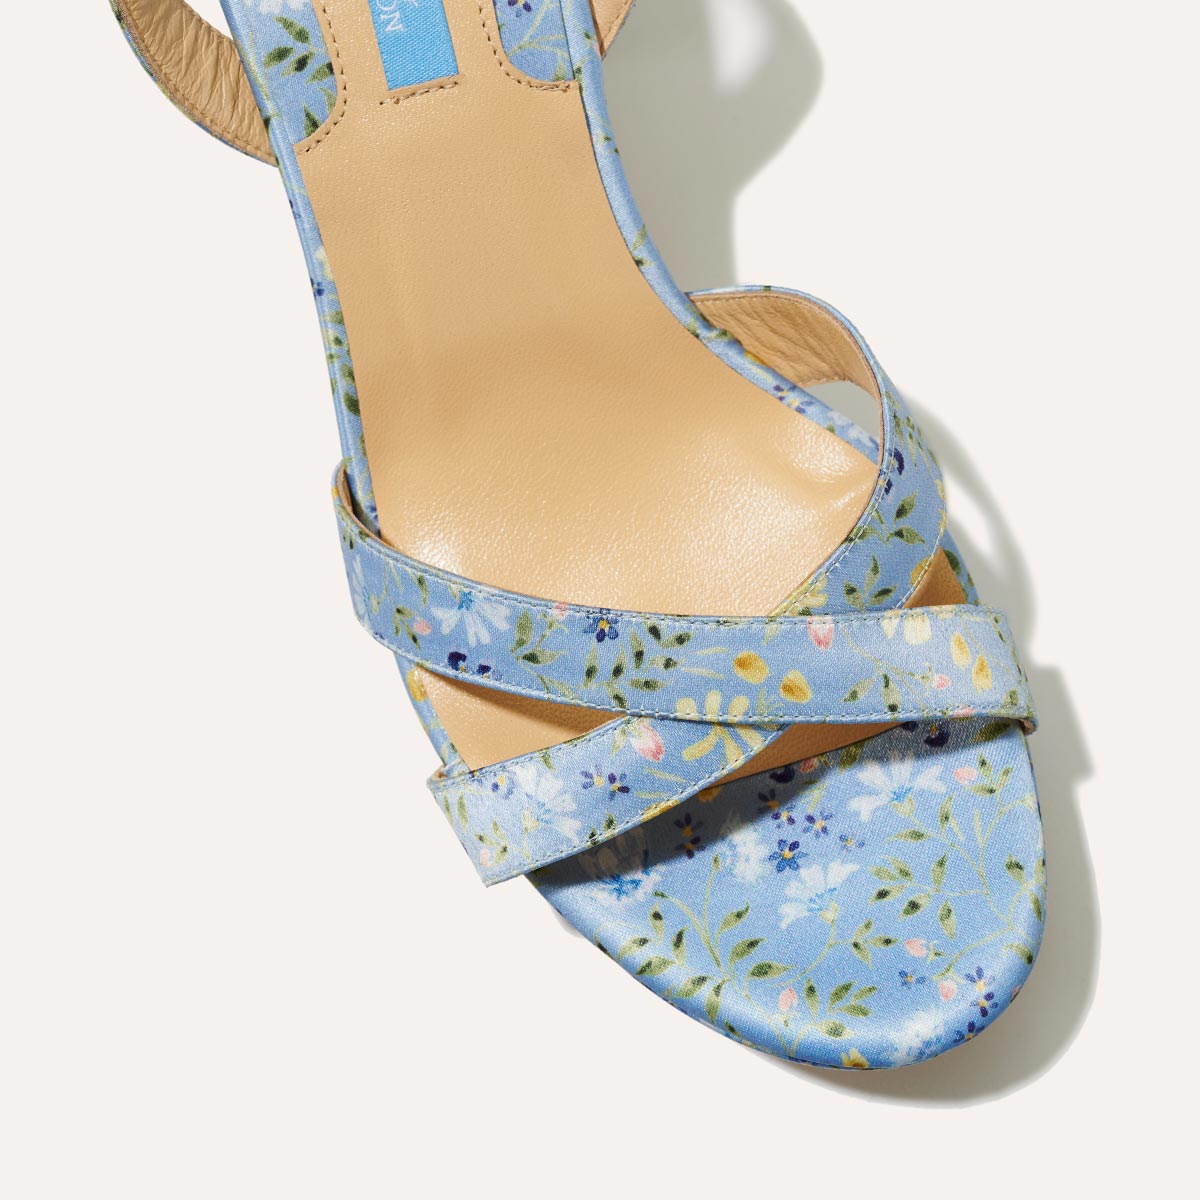 The Platform Sandal - Blue Floral Satin